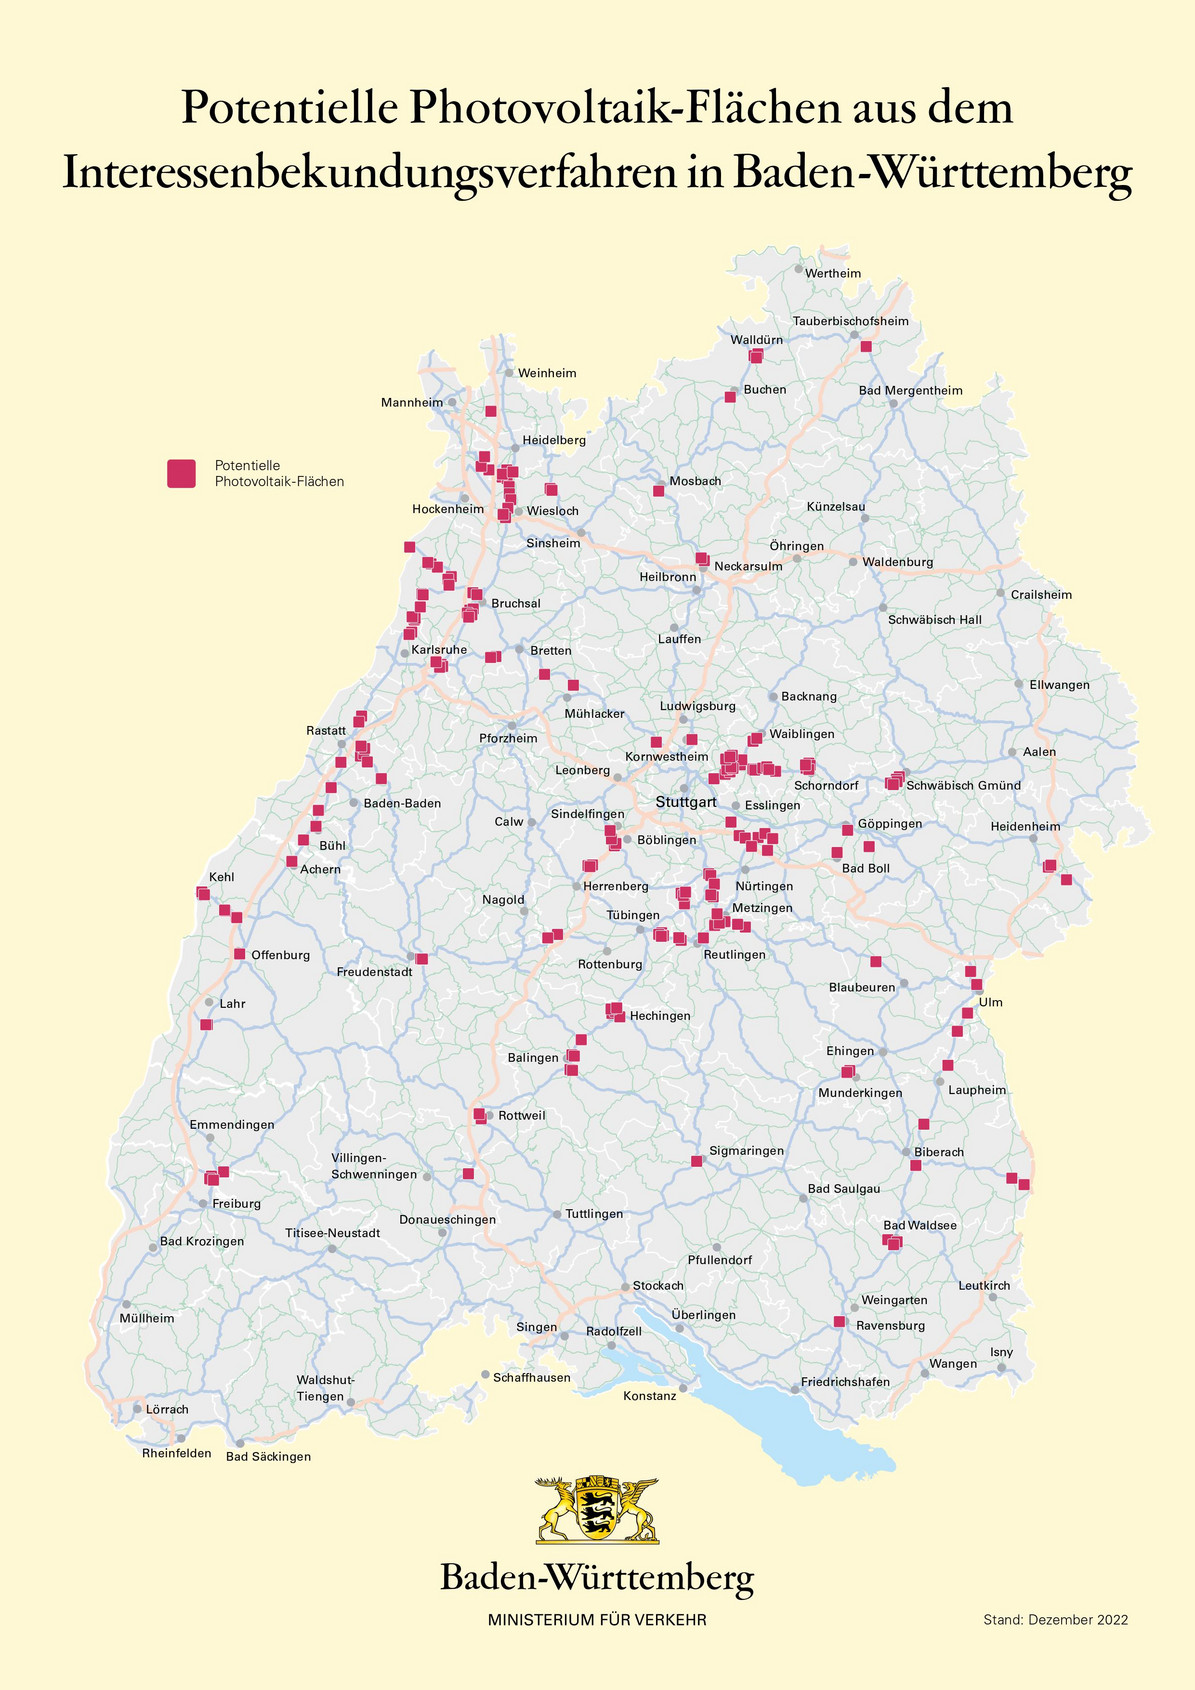 Karte von Baden-Württemberg, auf welcher potentielle Photovoltaik-Flächen aus dem Interessensbekundungsverfahren markiert sind.